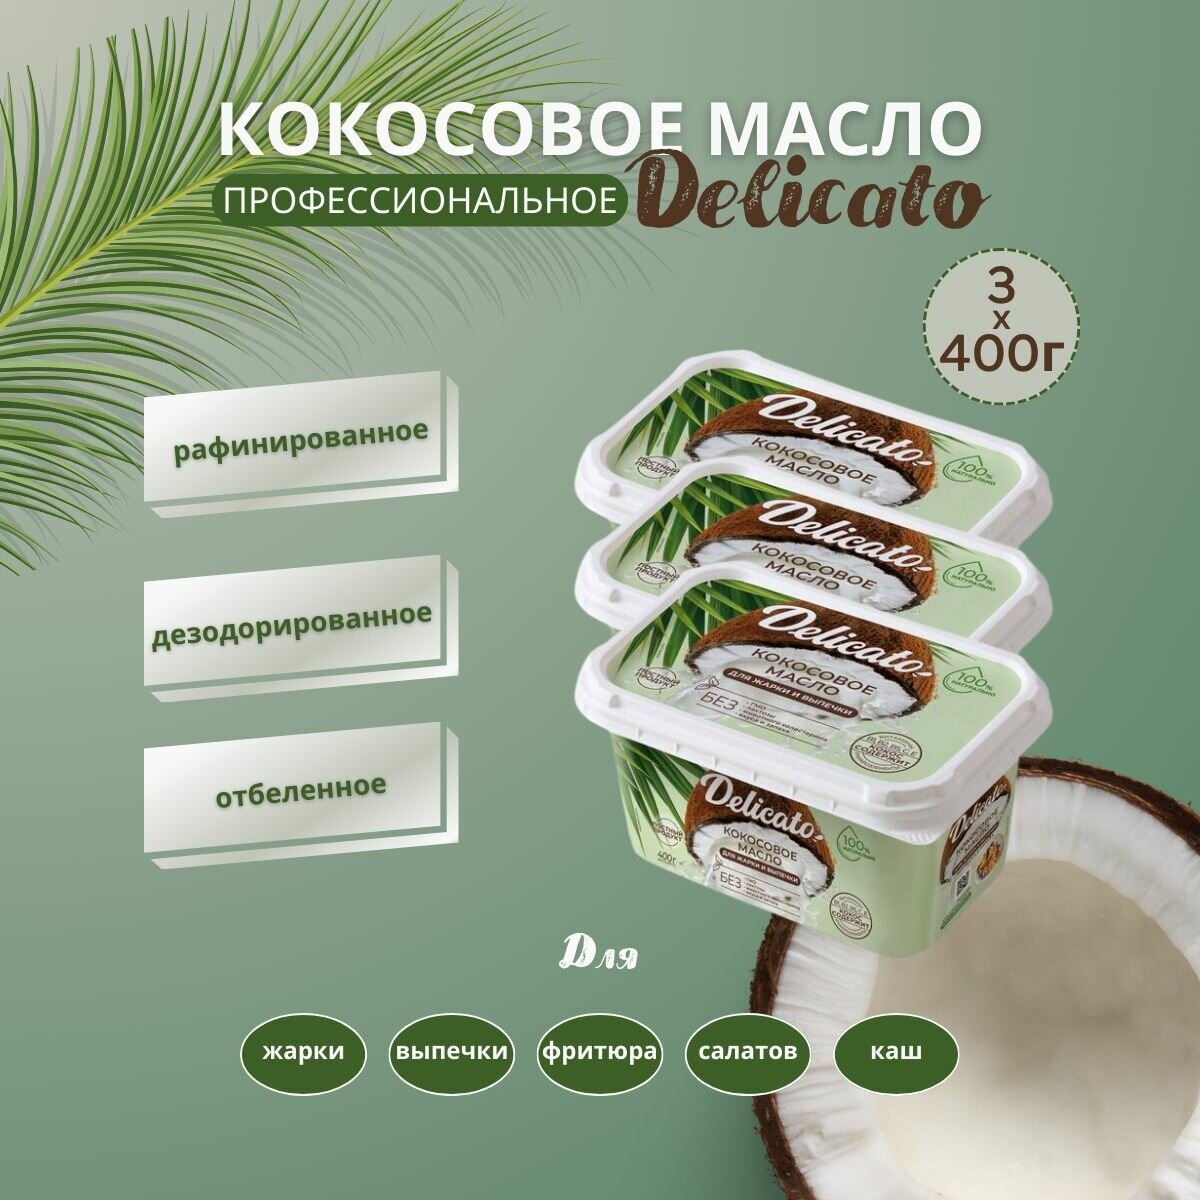 Кокосовое масло Delicato 1200 г ( 3х400 г) пищевое для жарки, выпечки и фритюра.